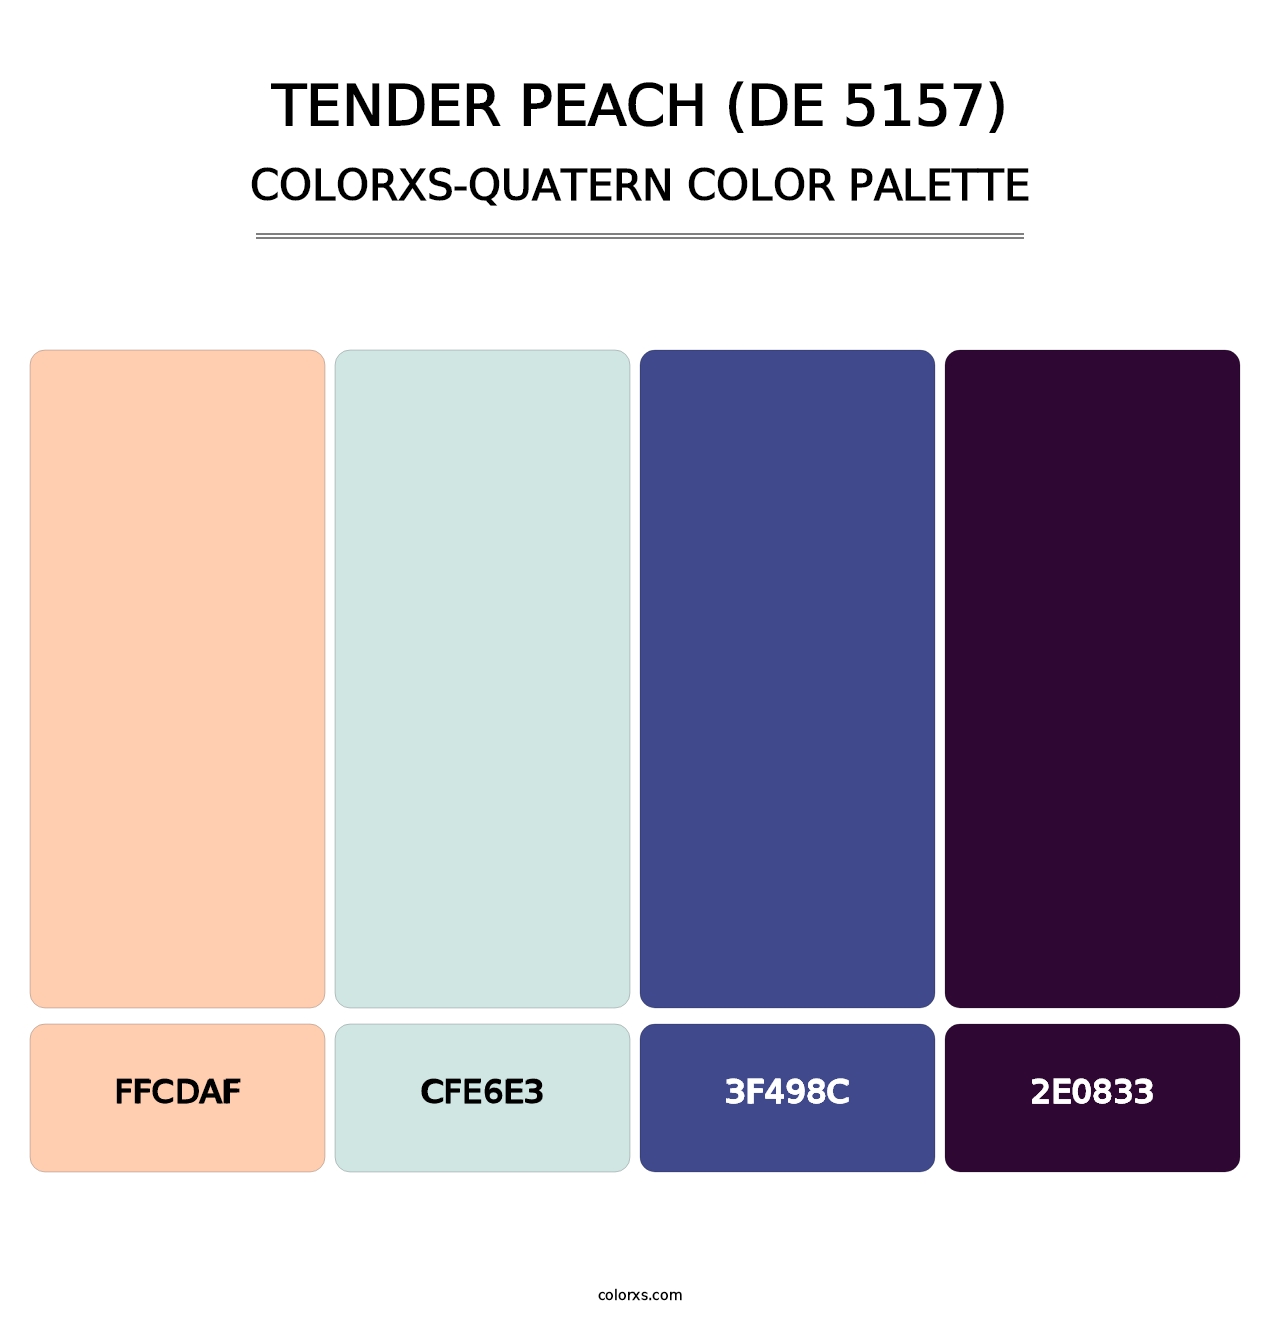 Tender Peach (DE 5157) - Colorxs Quatern Palette